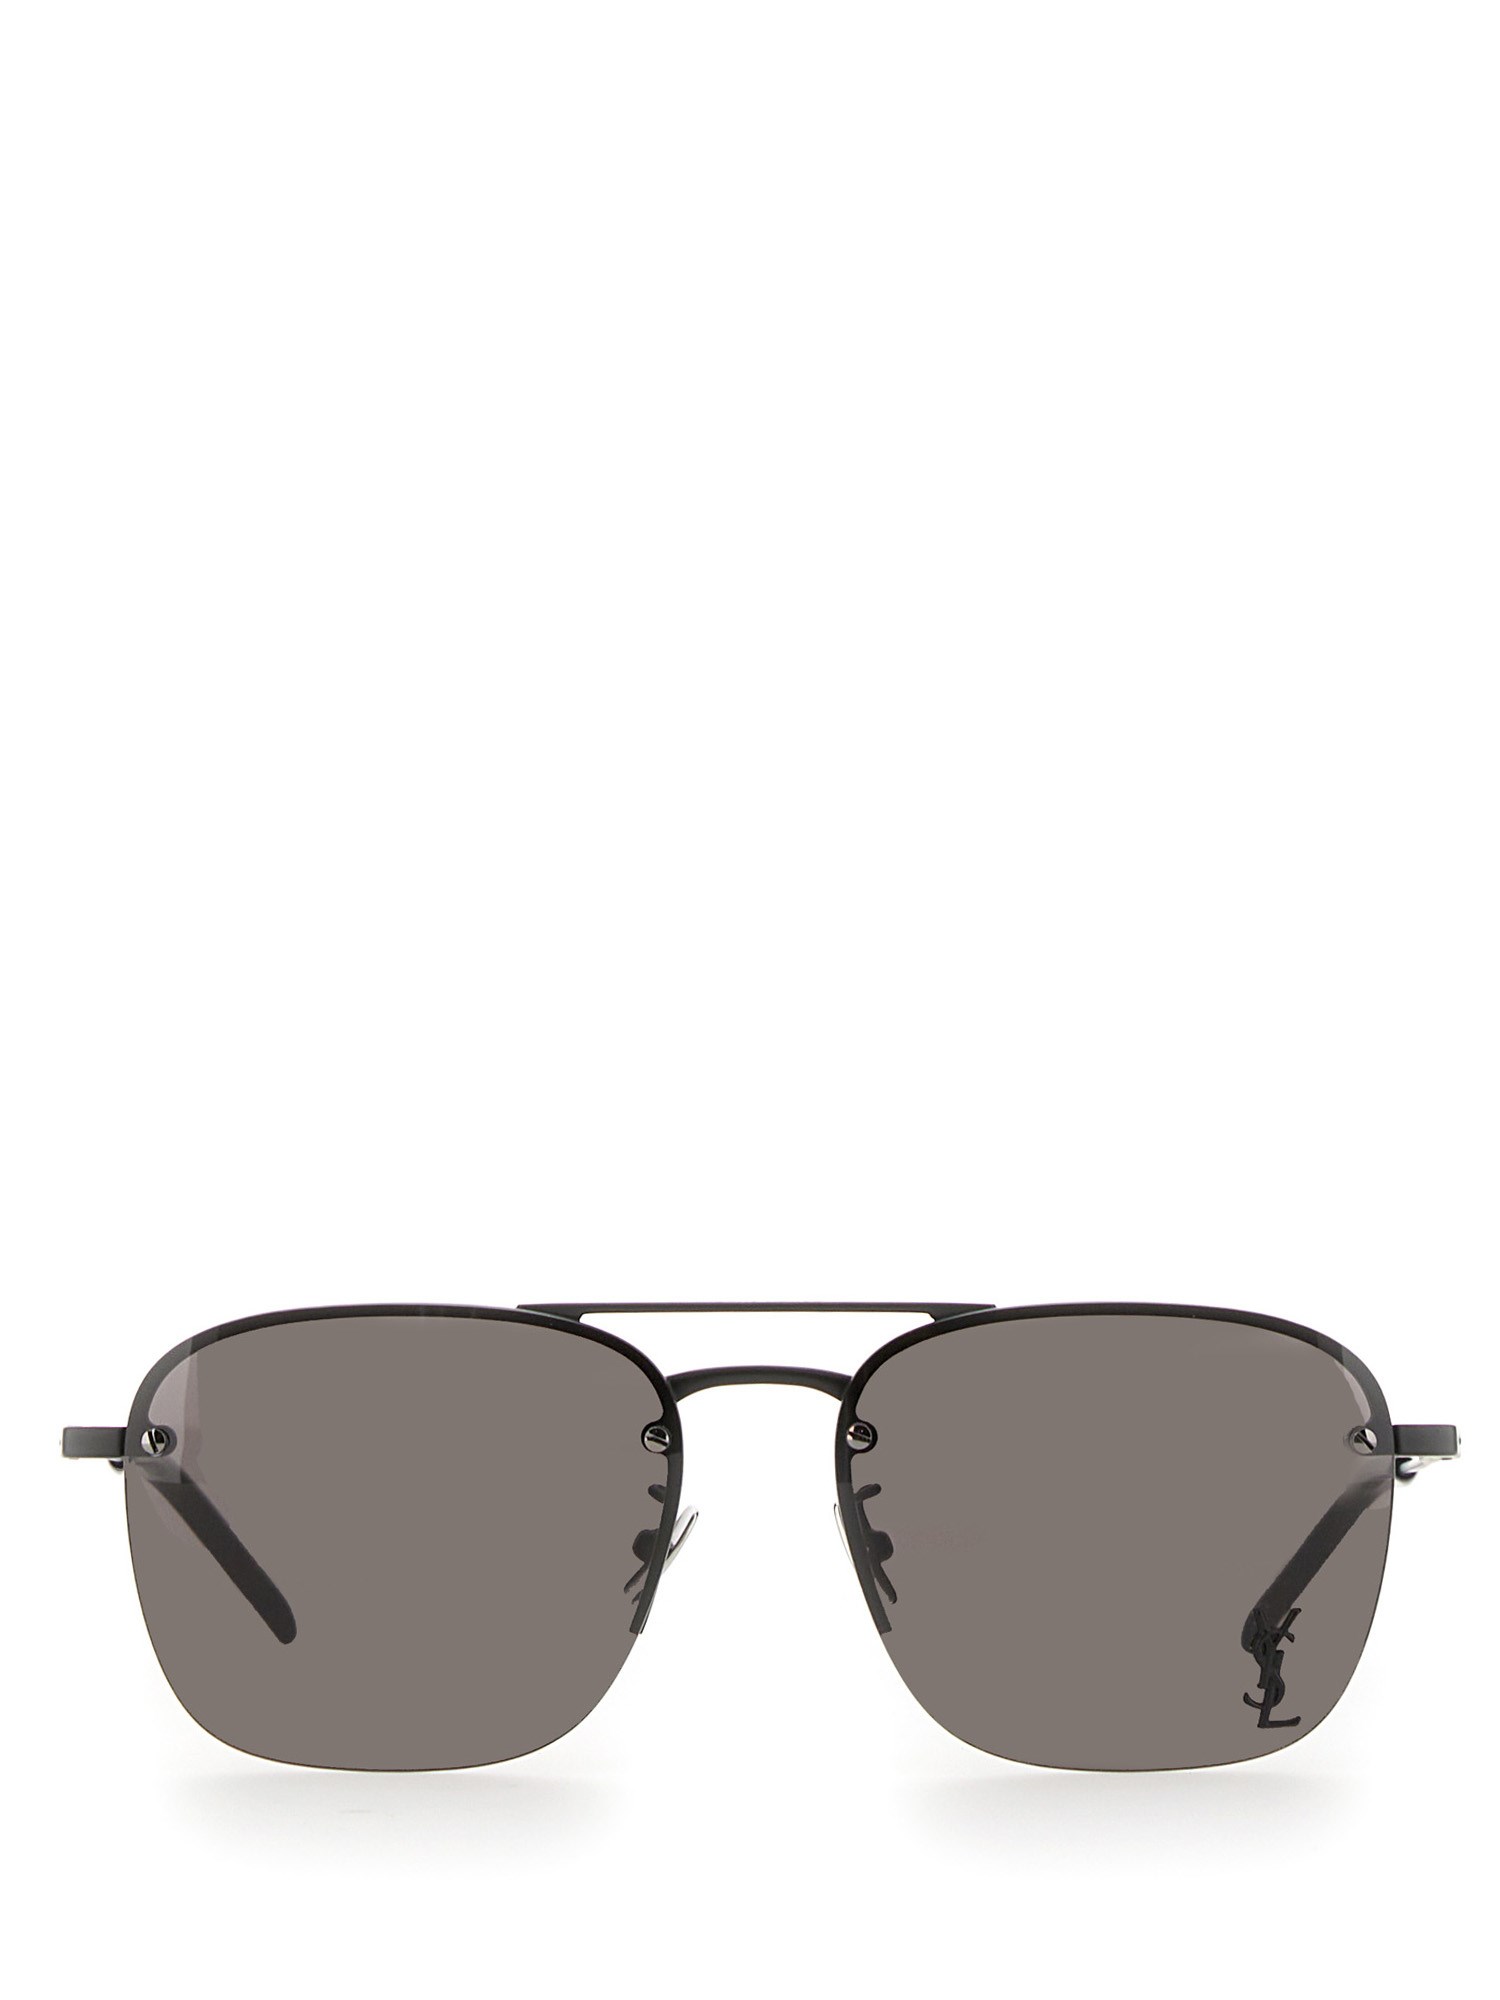 Saint Laurent Sunglasses Sl 309 M In Black